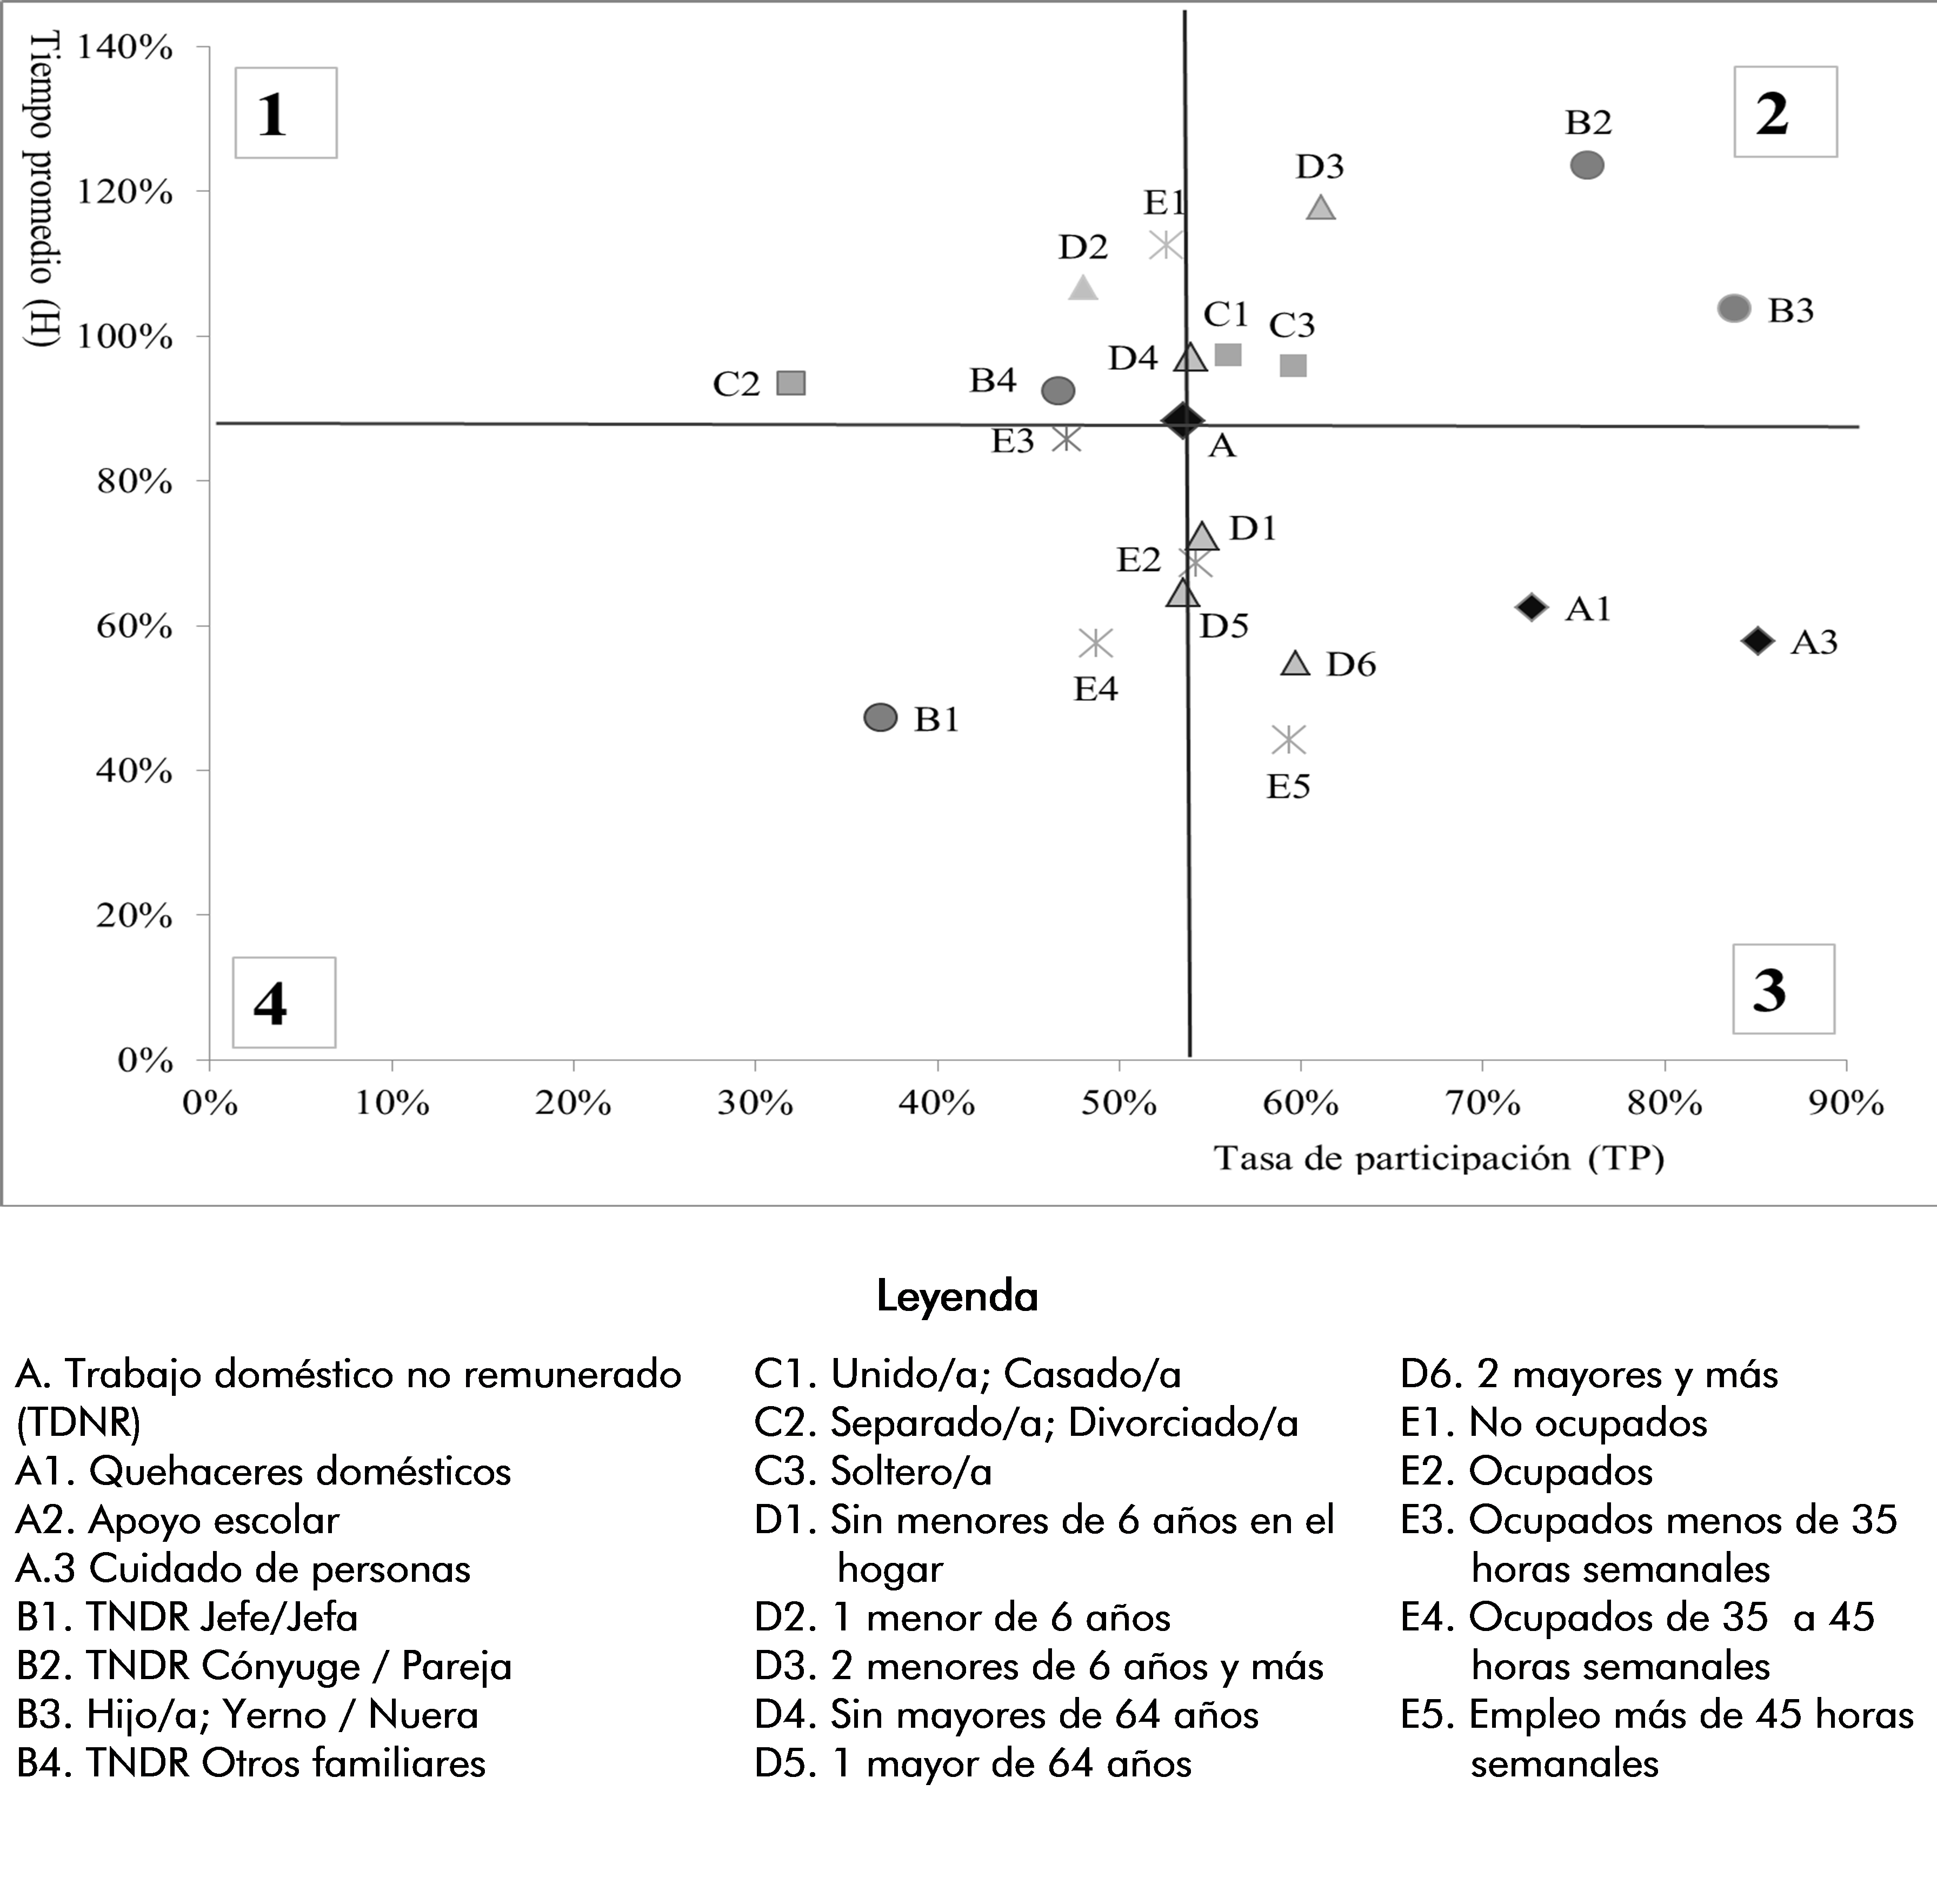  Figura 2. Brechas de género en la distribución del trabajo no remunerado según características de los hogares